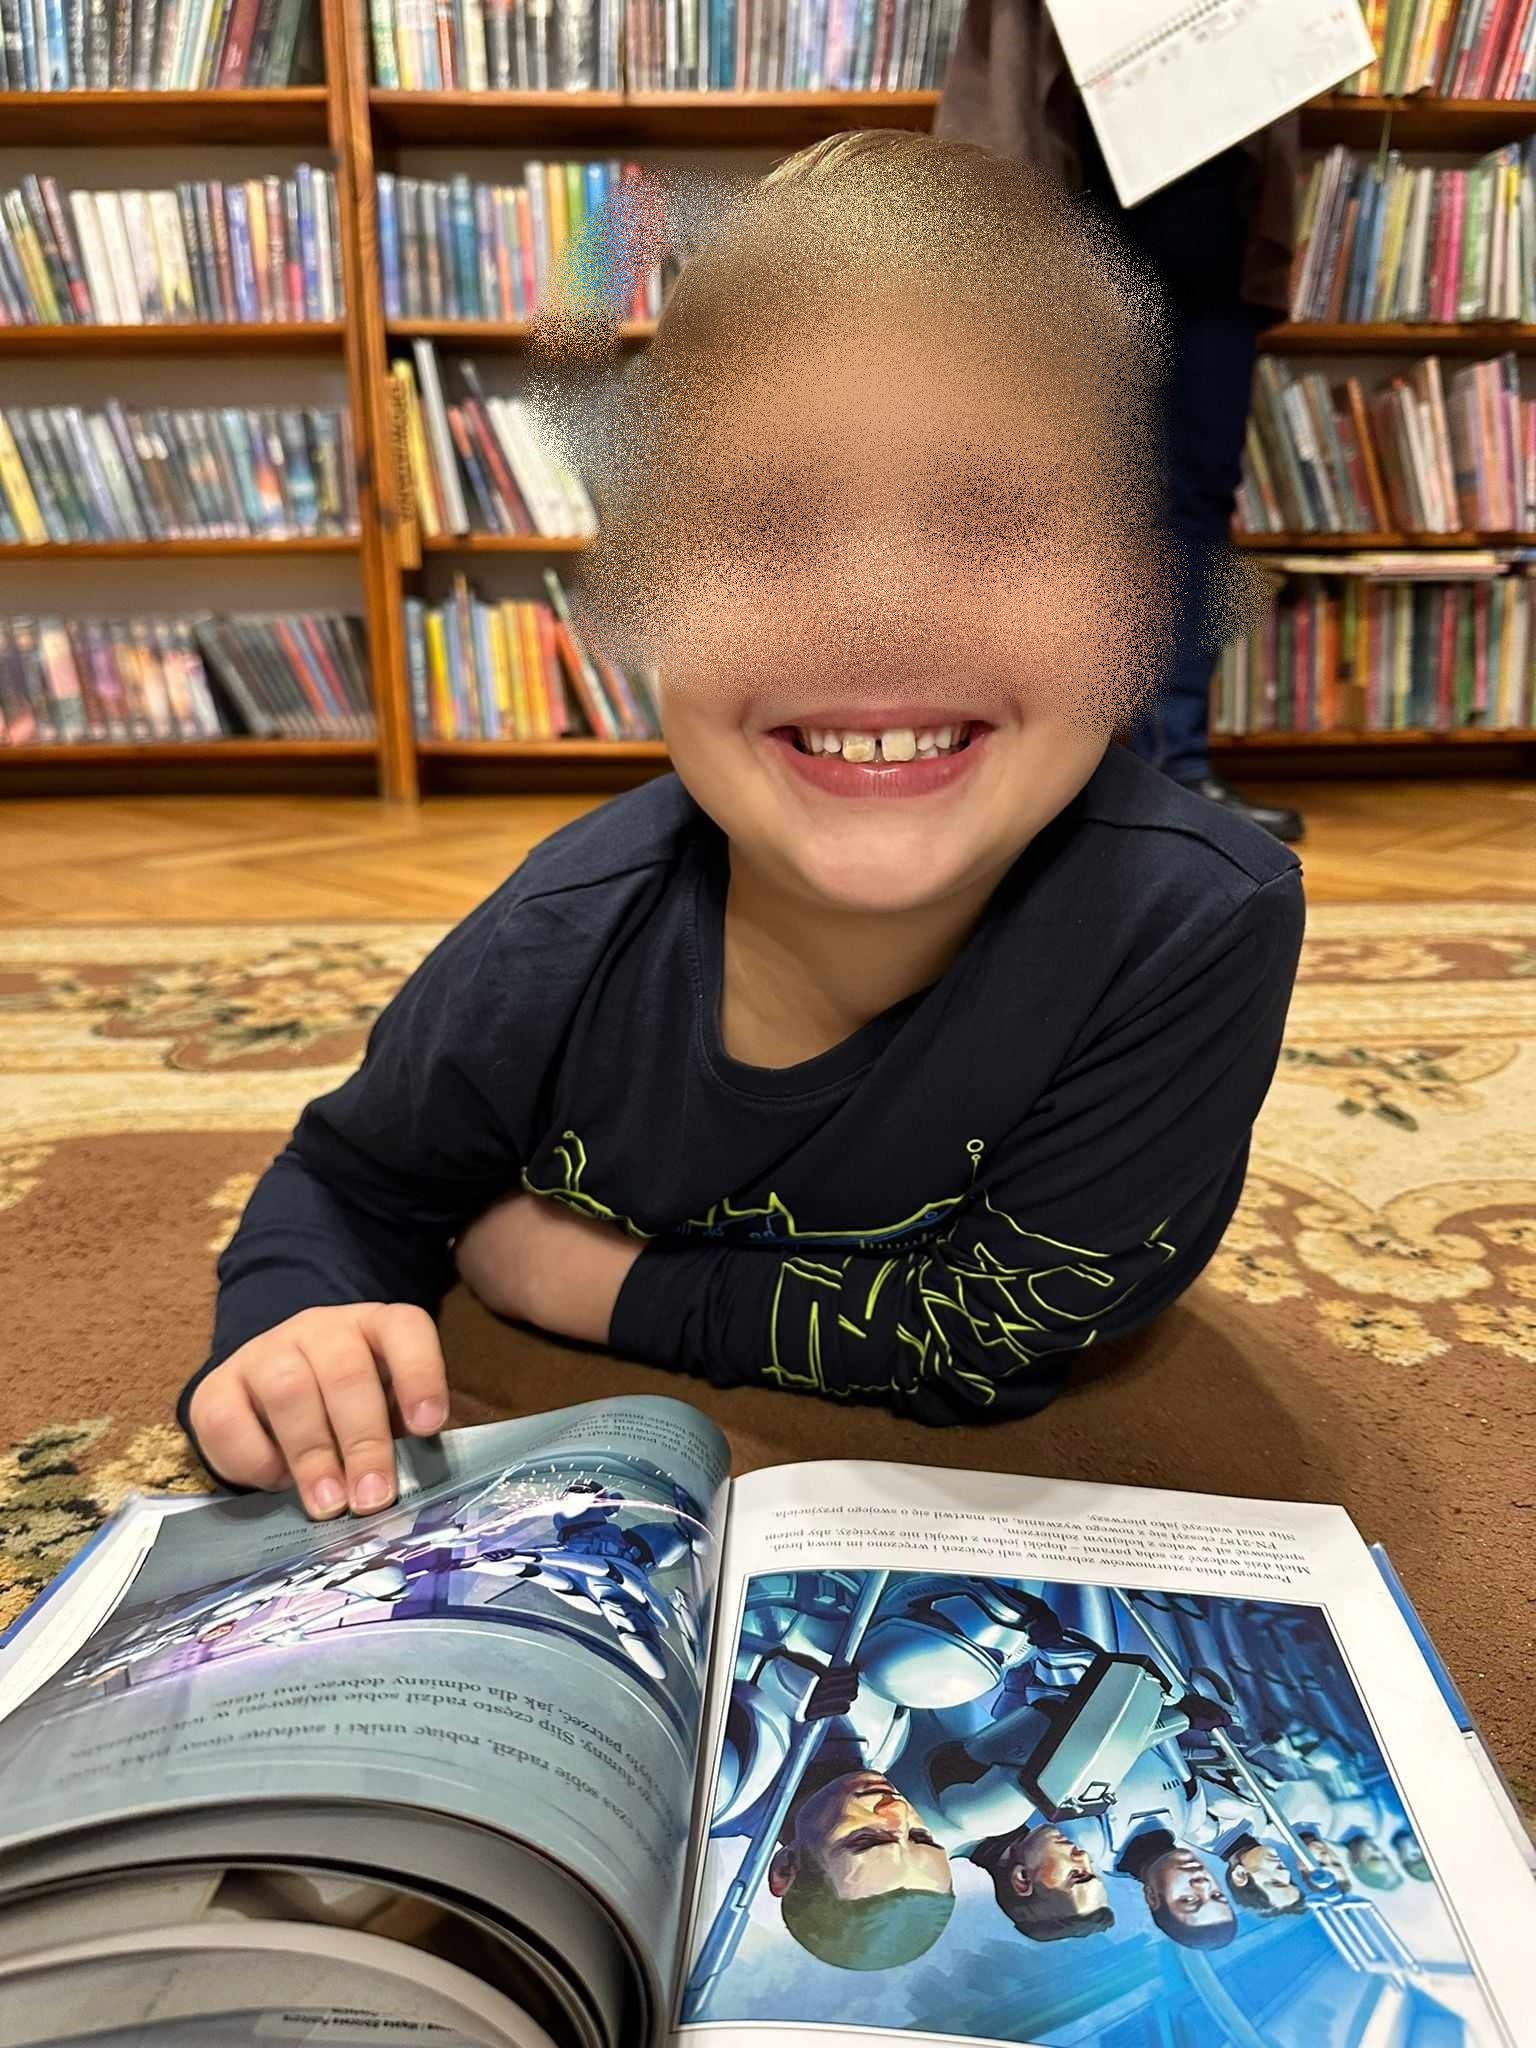 Na dywanie, na brzuchu, leży uśmiechnięty chłopiec. Przed chłopcem leży otwarta książka.
